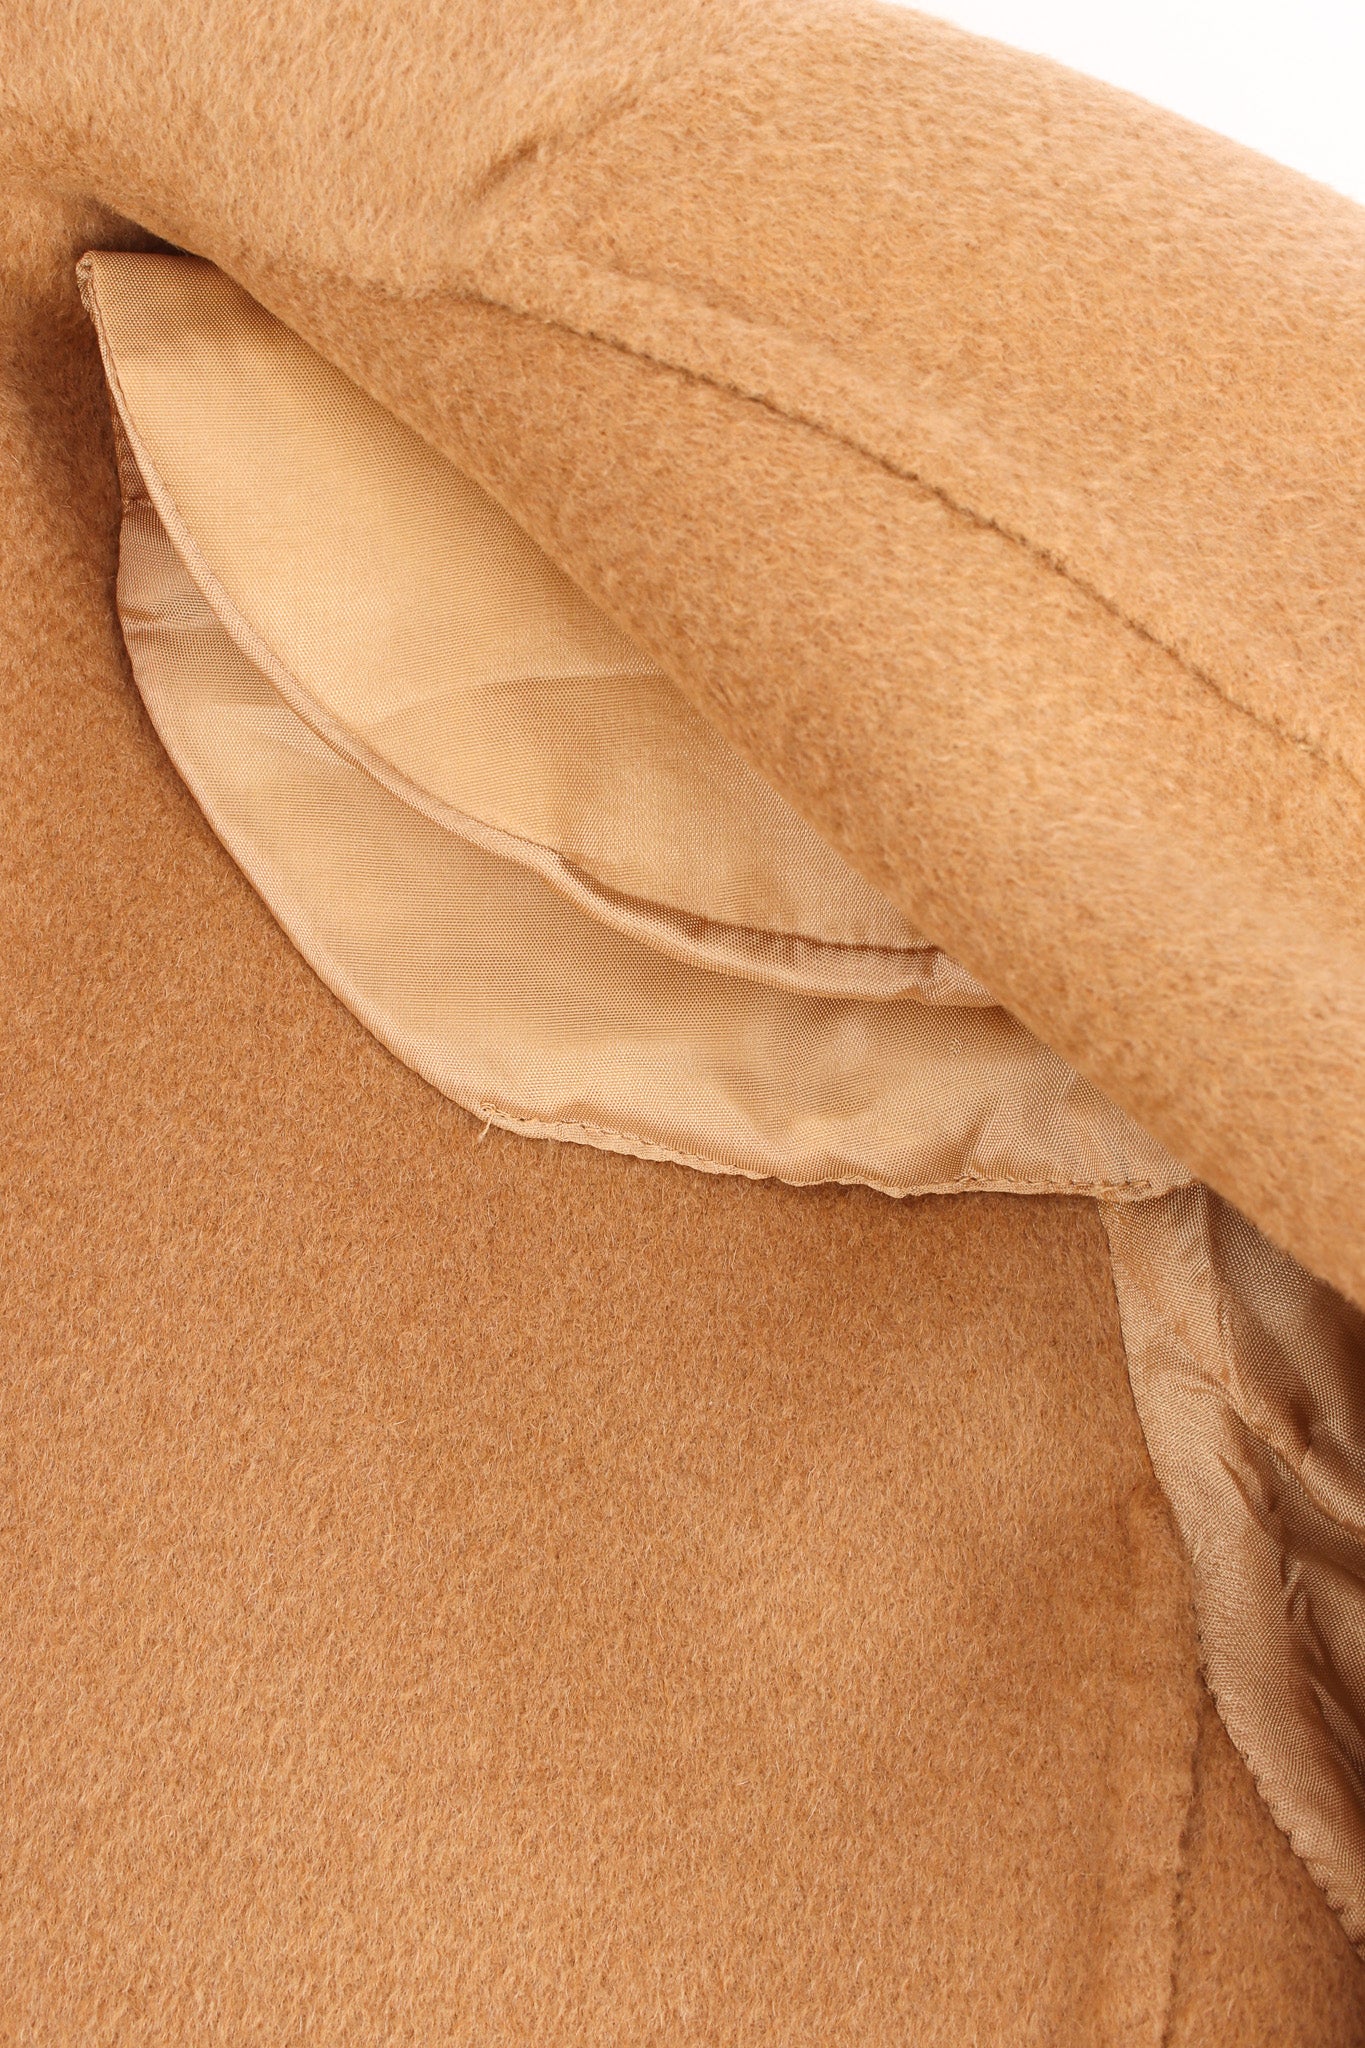 Vintage Michael Kors Camel Cashmere Jacket & Skirt Set lightly padded shoulder @ Recess LA